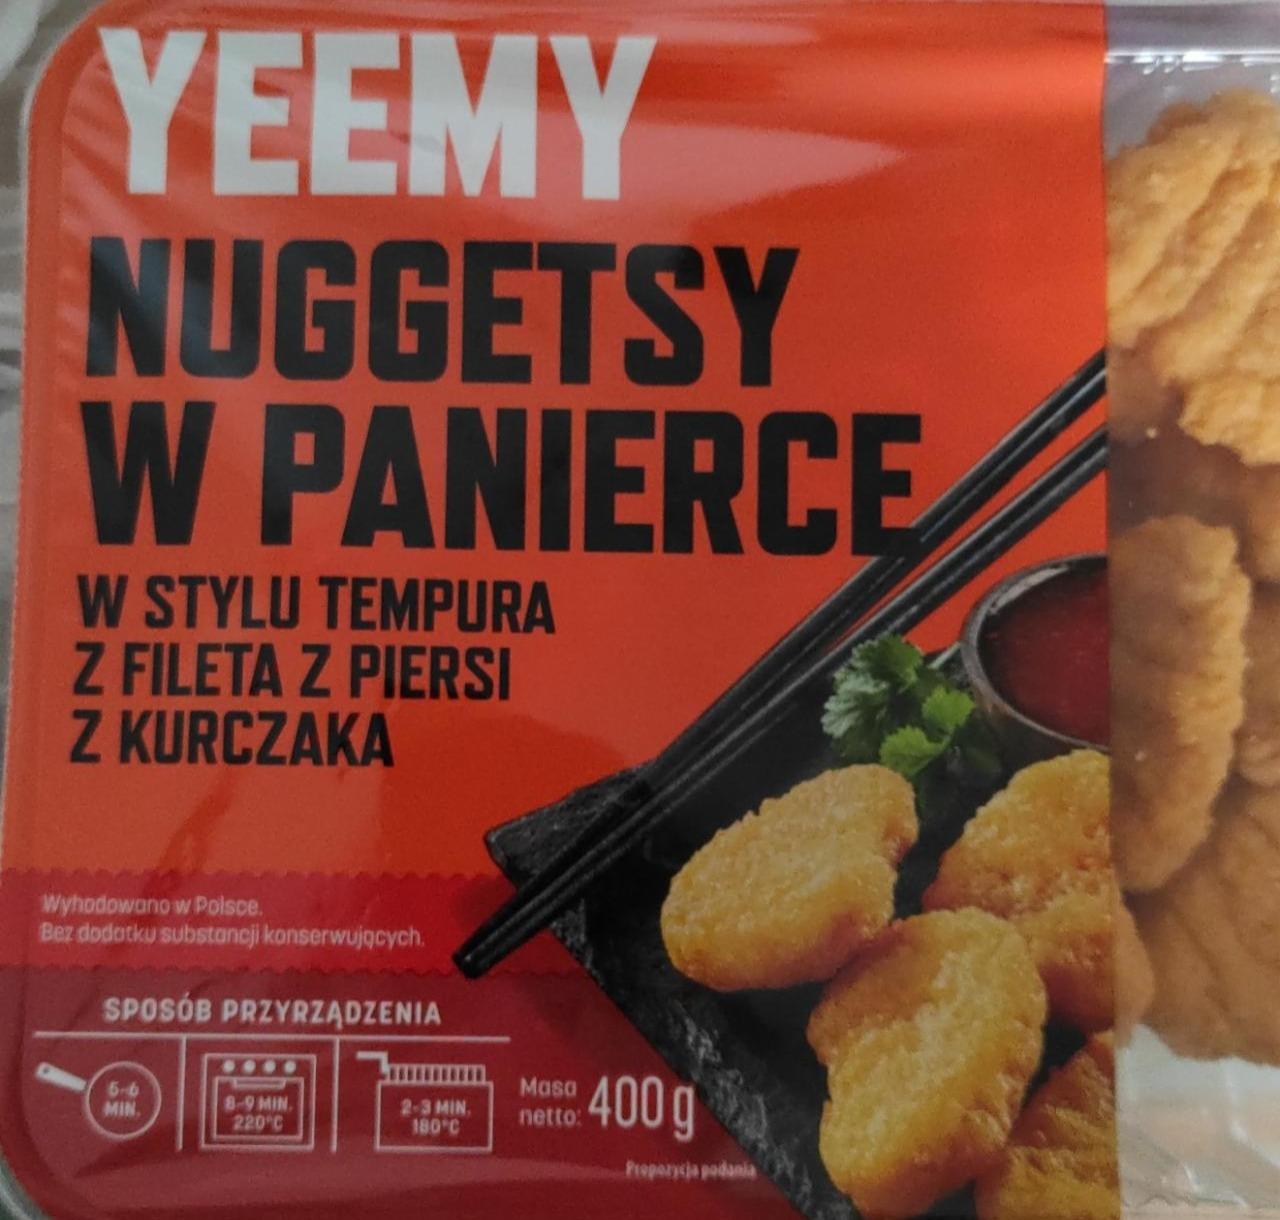 Фото - Nuggetsy w panierce w stylu tempura z fileta z piersi z kurczaka Yeemy